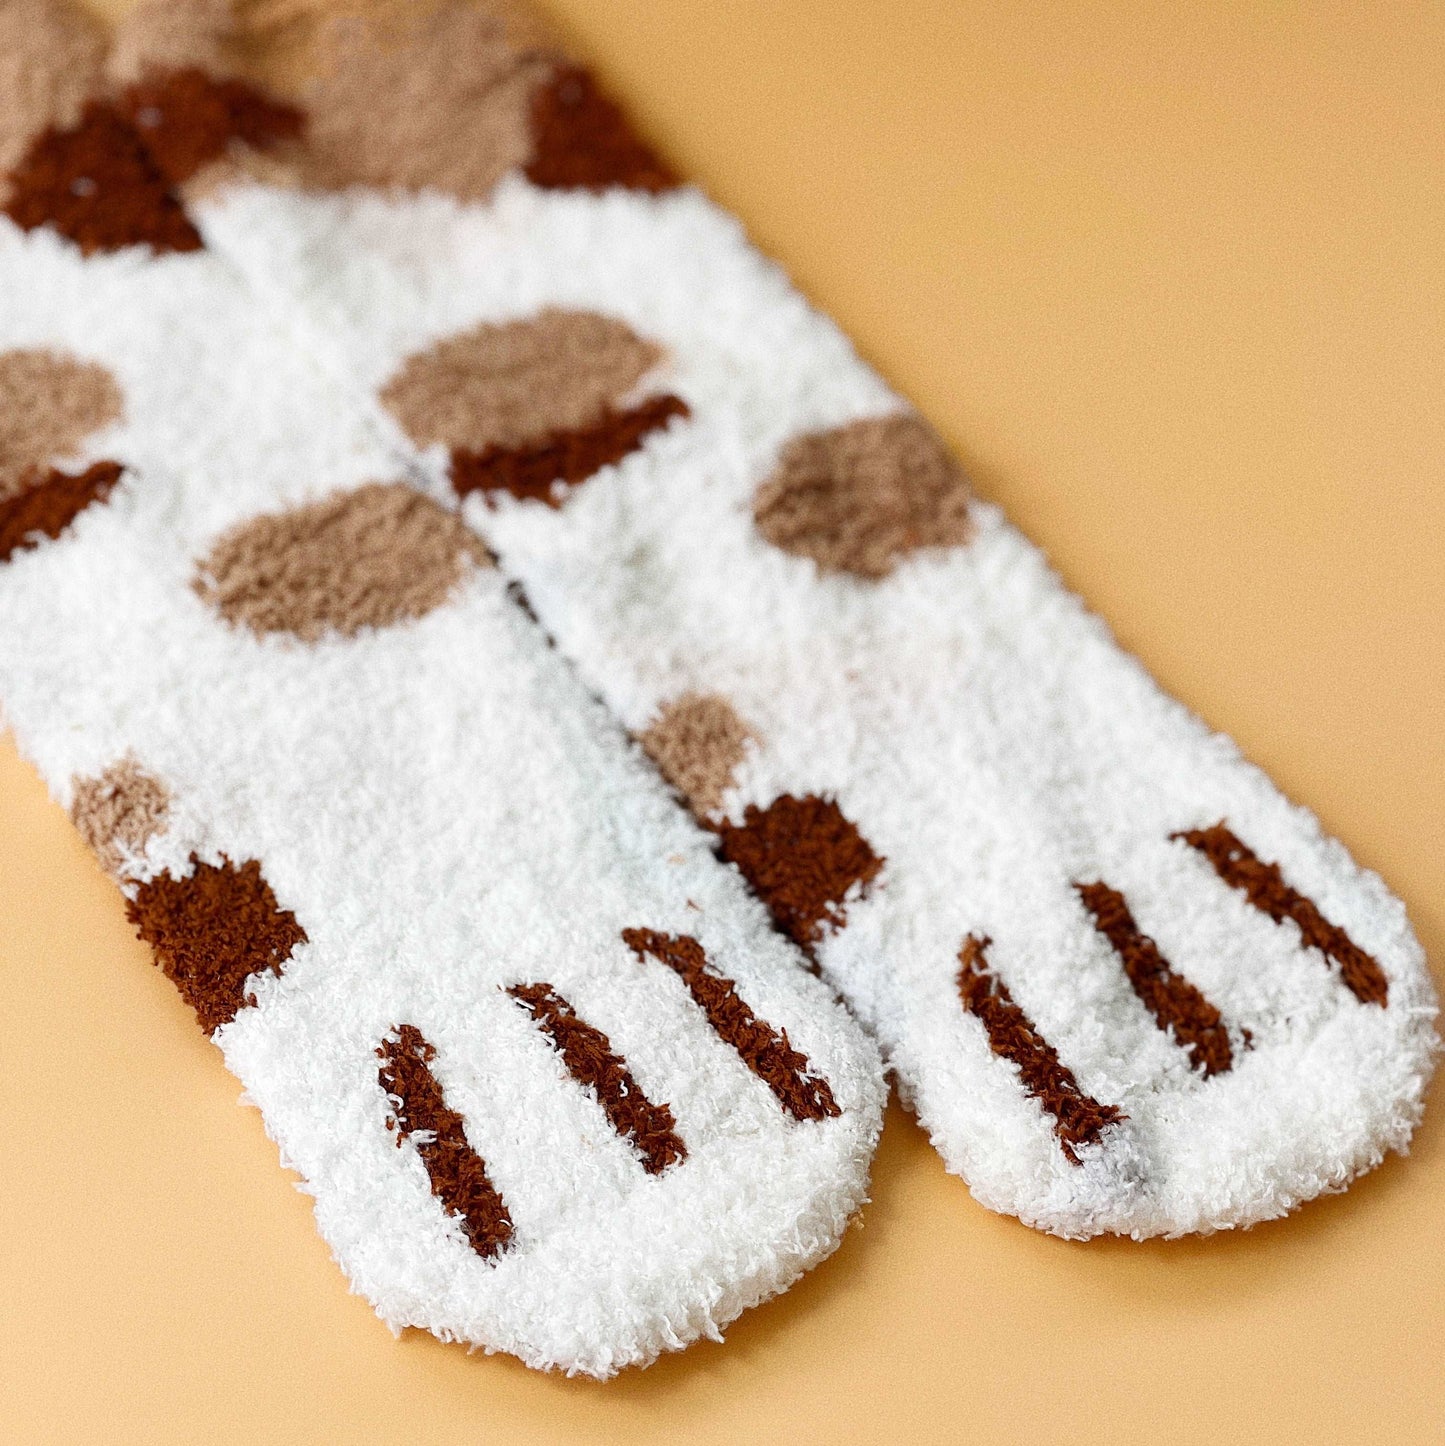 Fuzzy Cat Socks